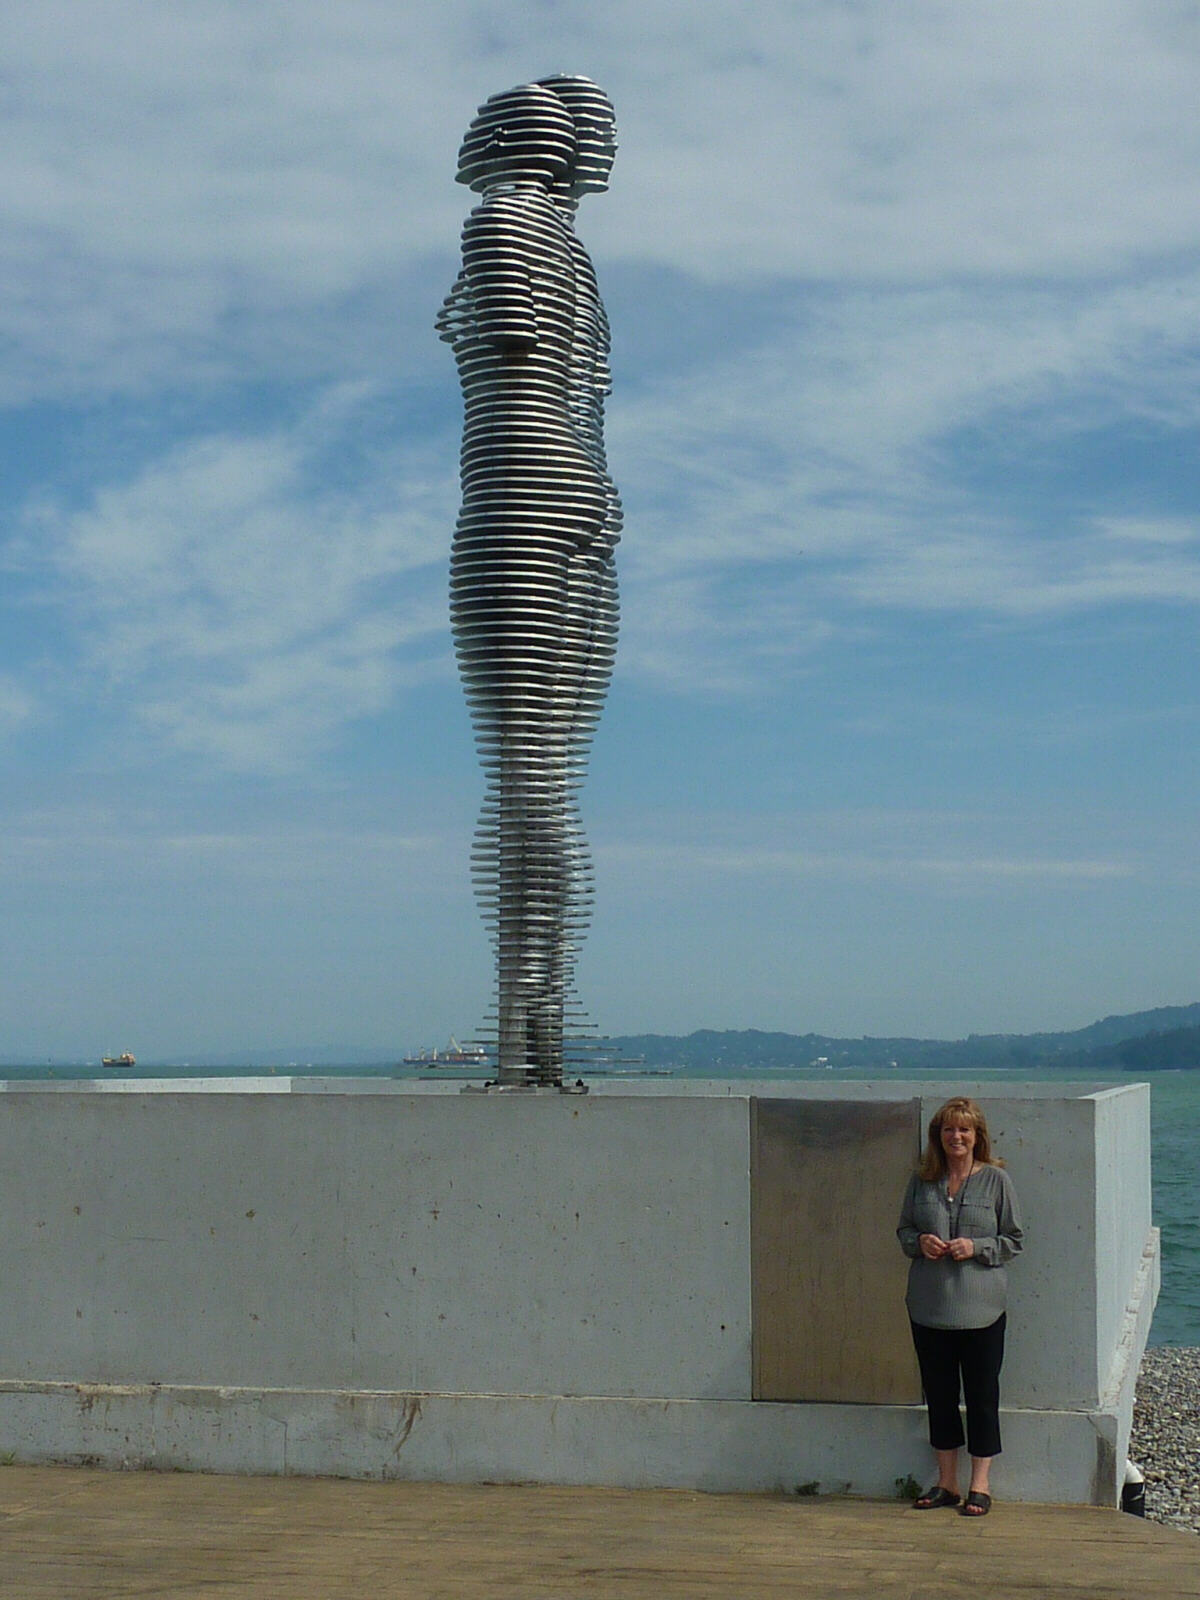 A statue made of wire in Batumi, Georgia